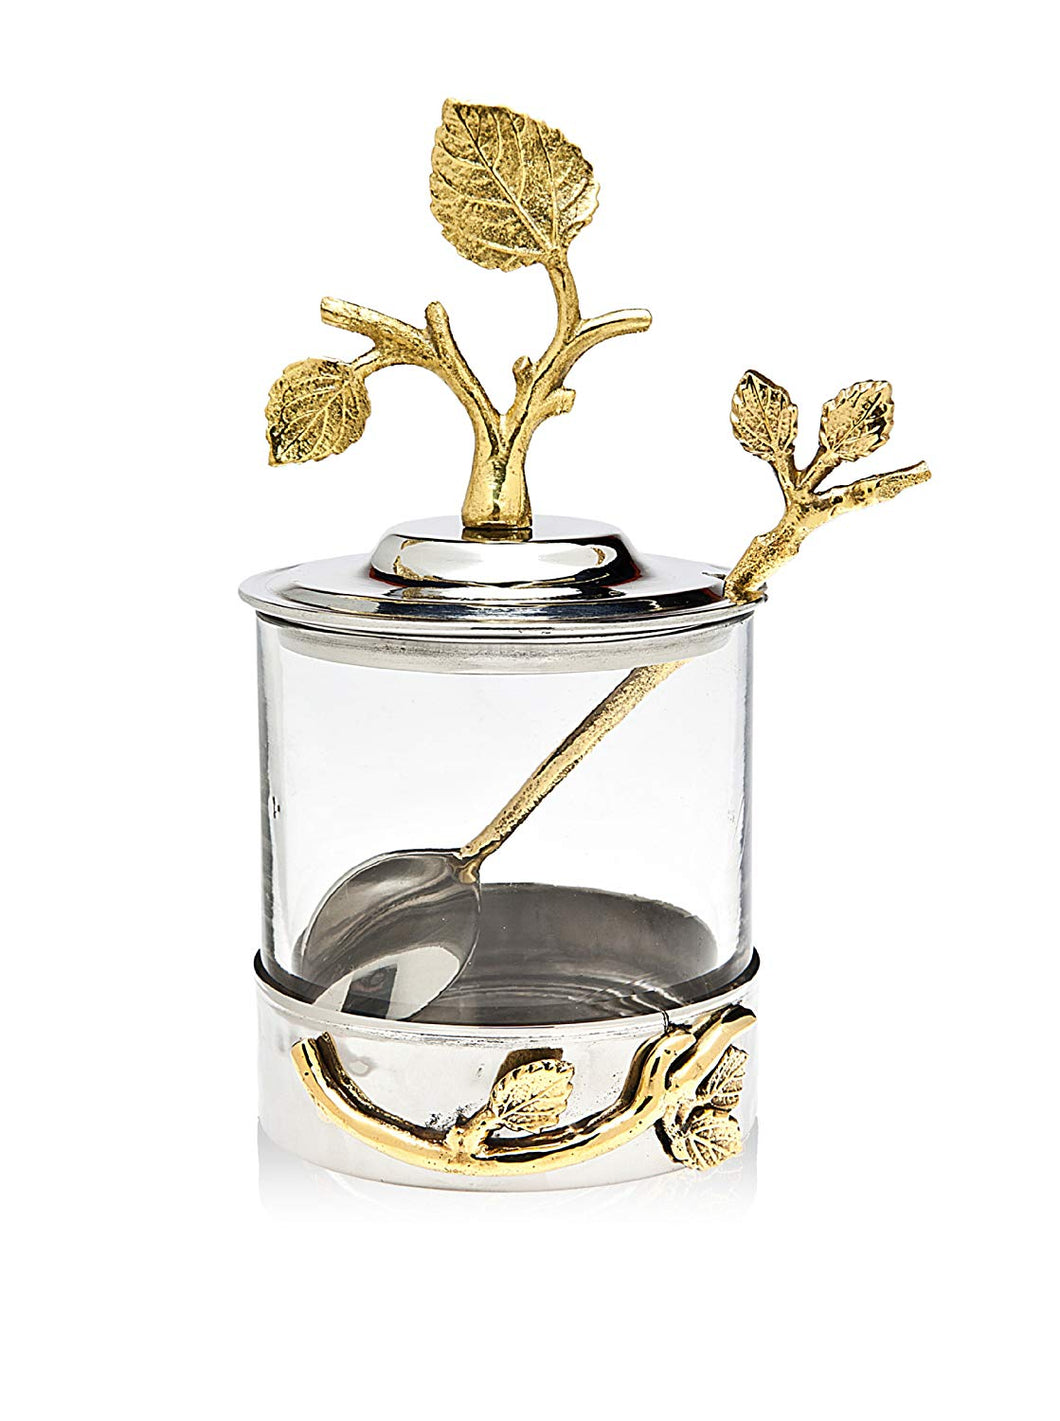 Silver Art Leaf Jam Jar With Spoon